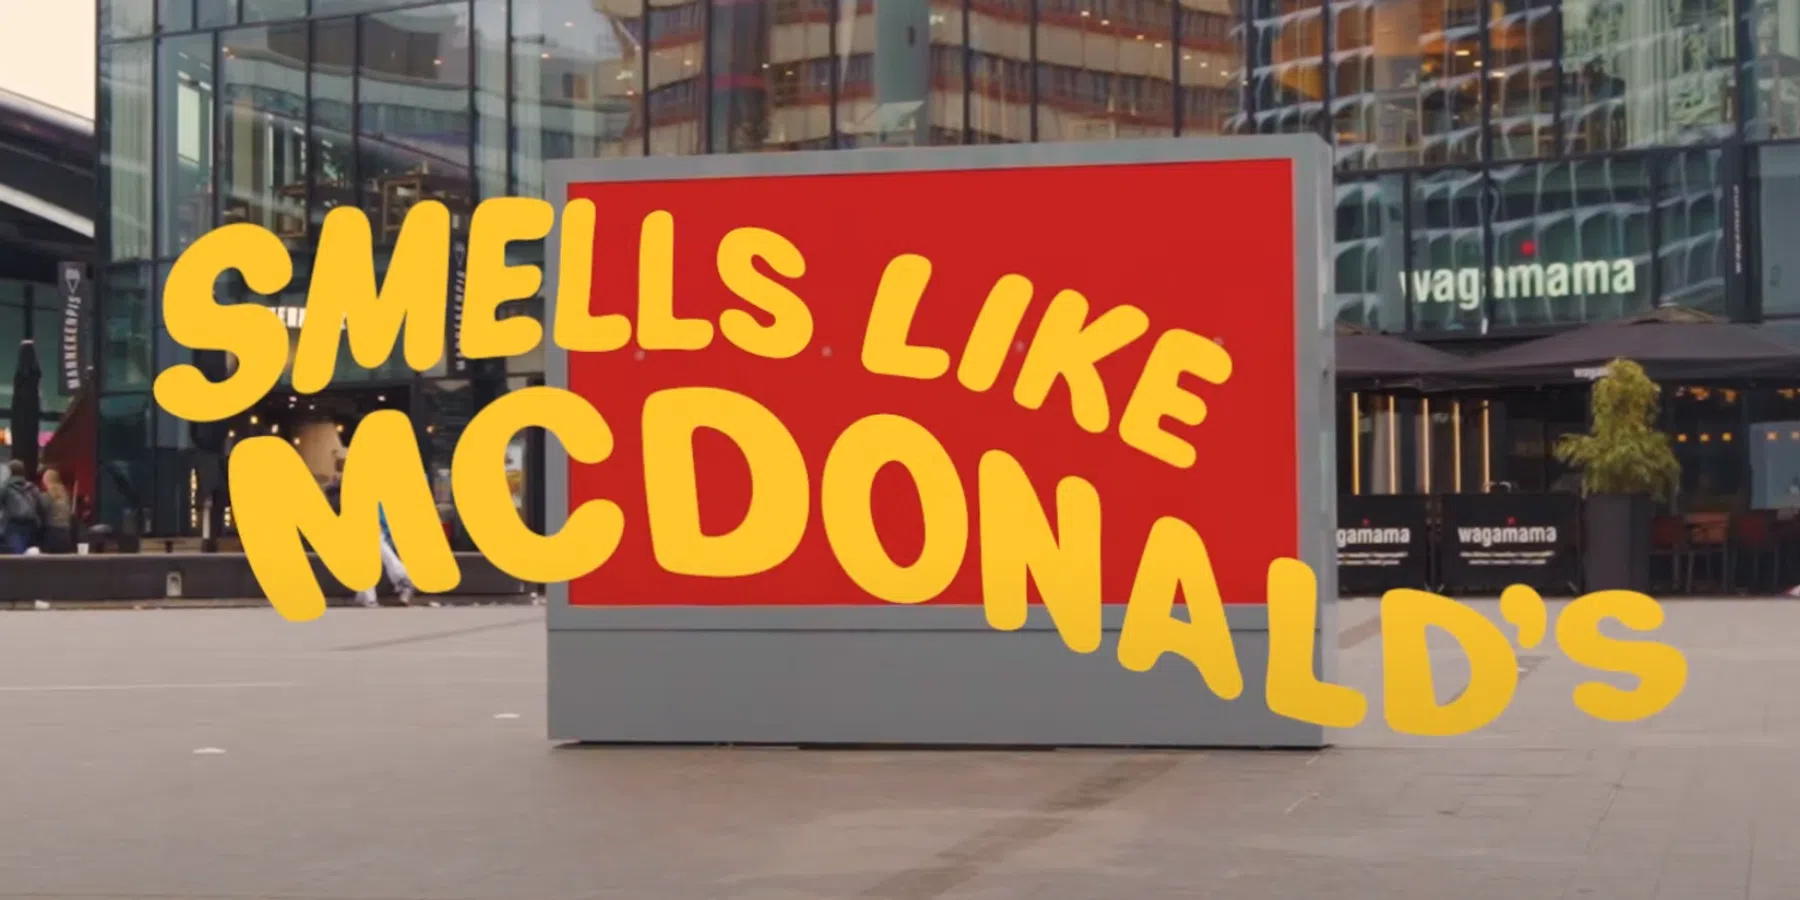 McDonald's laat je aan billboards ruiken om je te verleiden